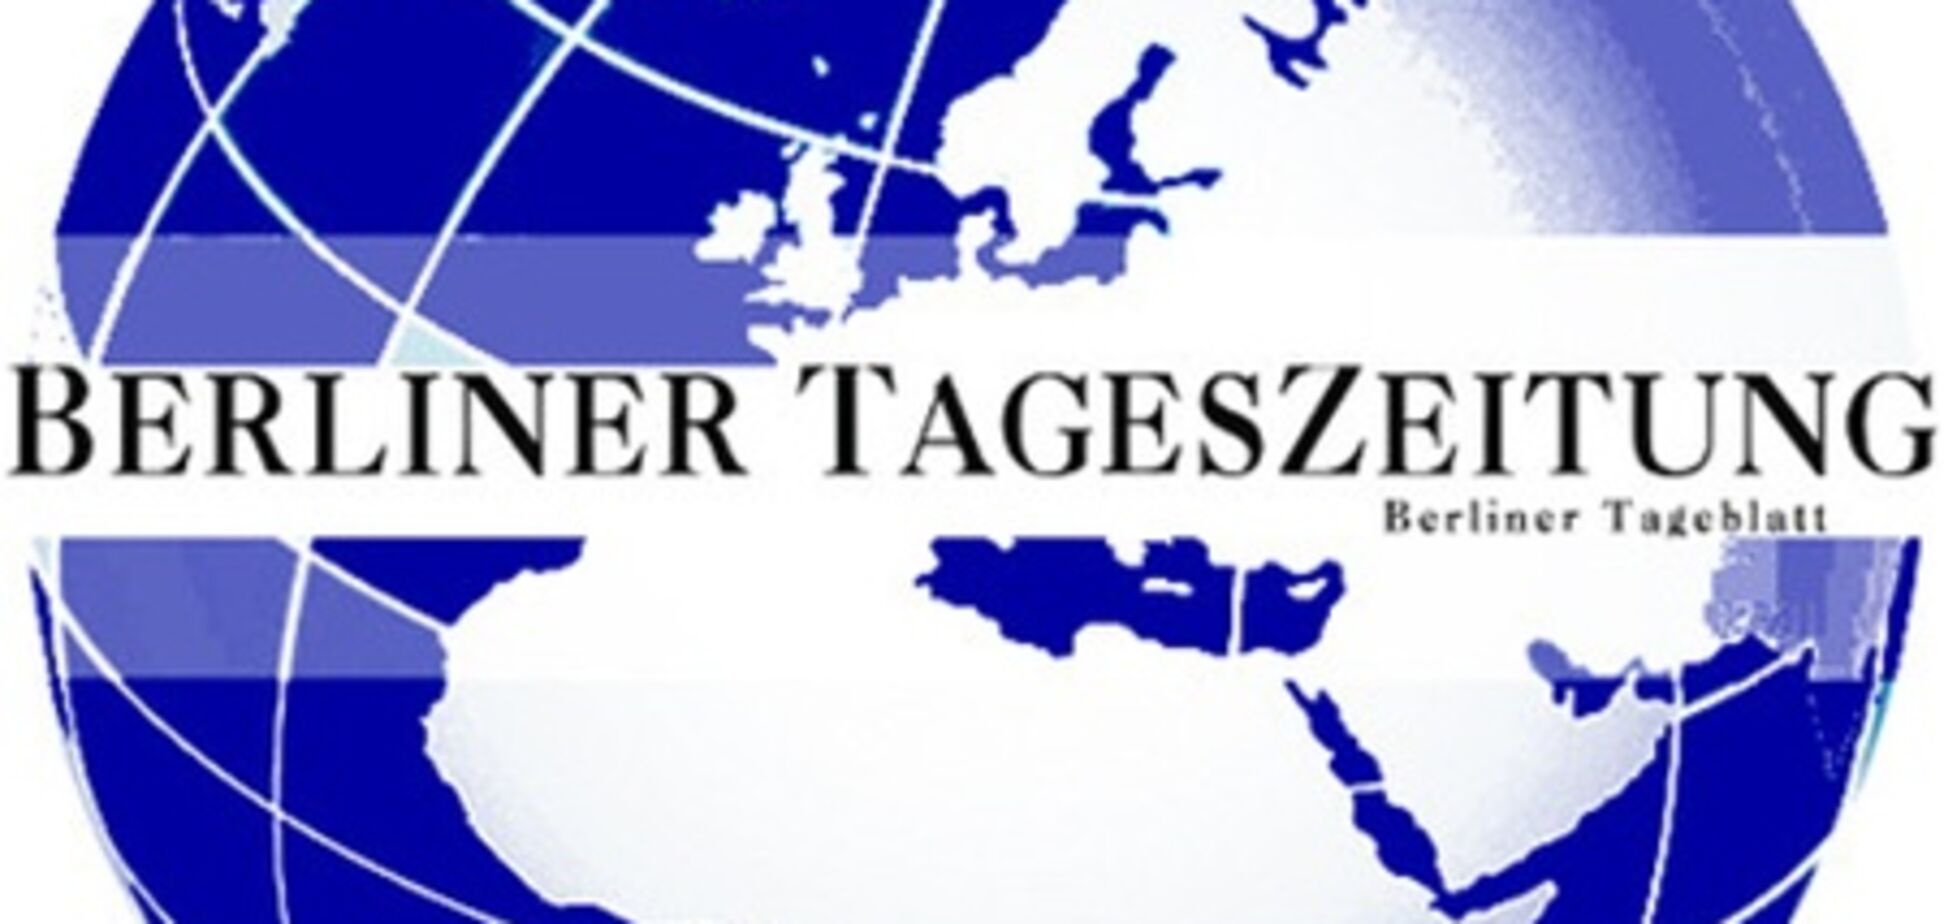 Немецкое СМИ, критикующее Тимошенко, обвинило 'Deutsche Welle' в заангажированости